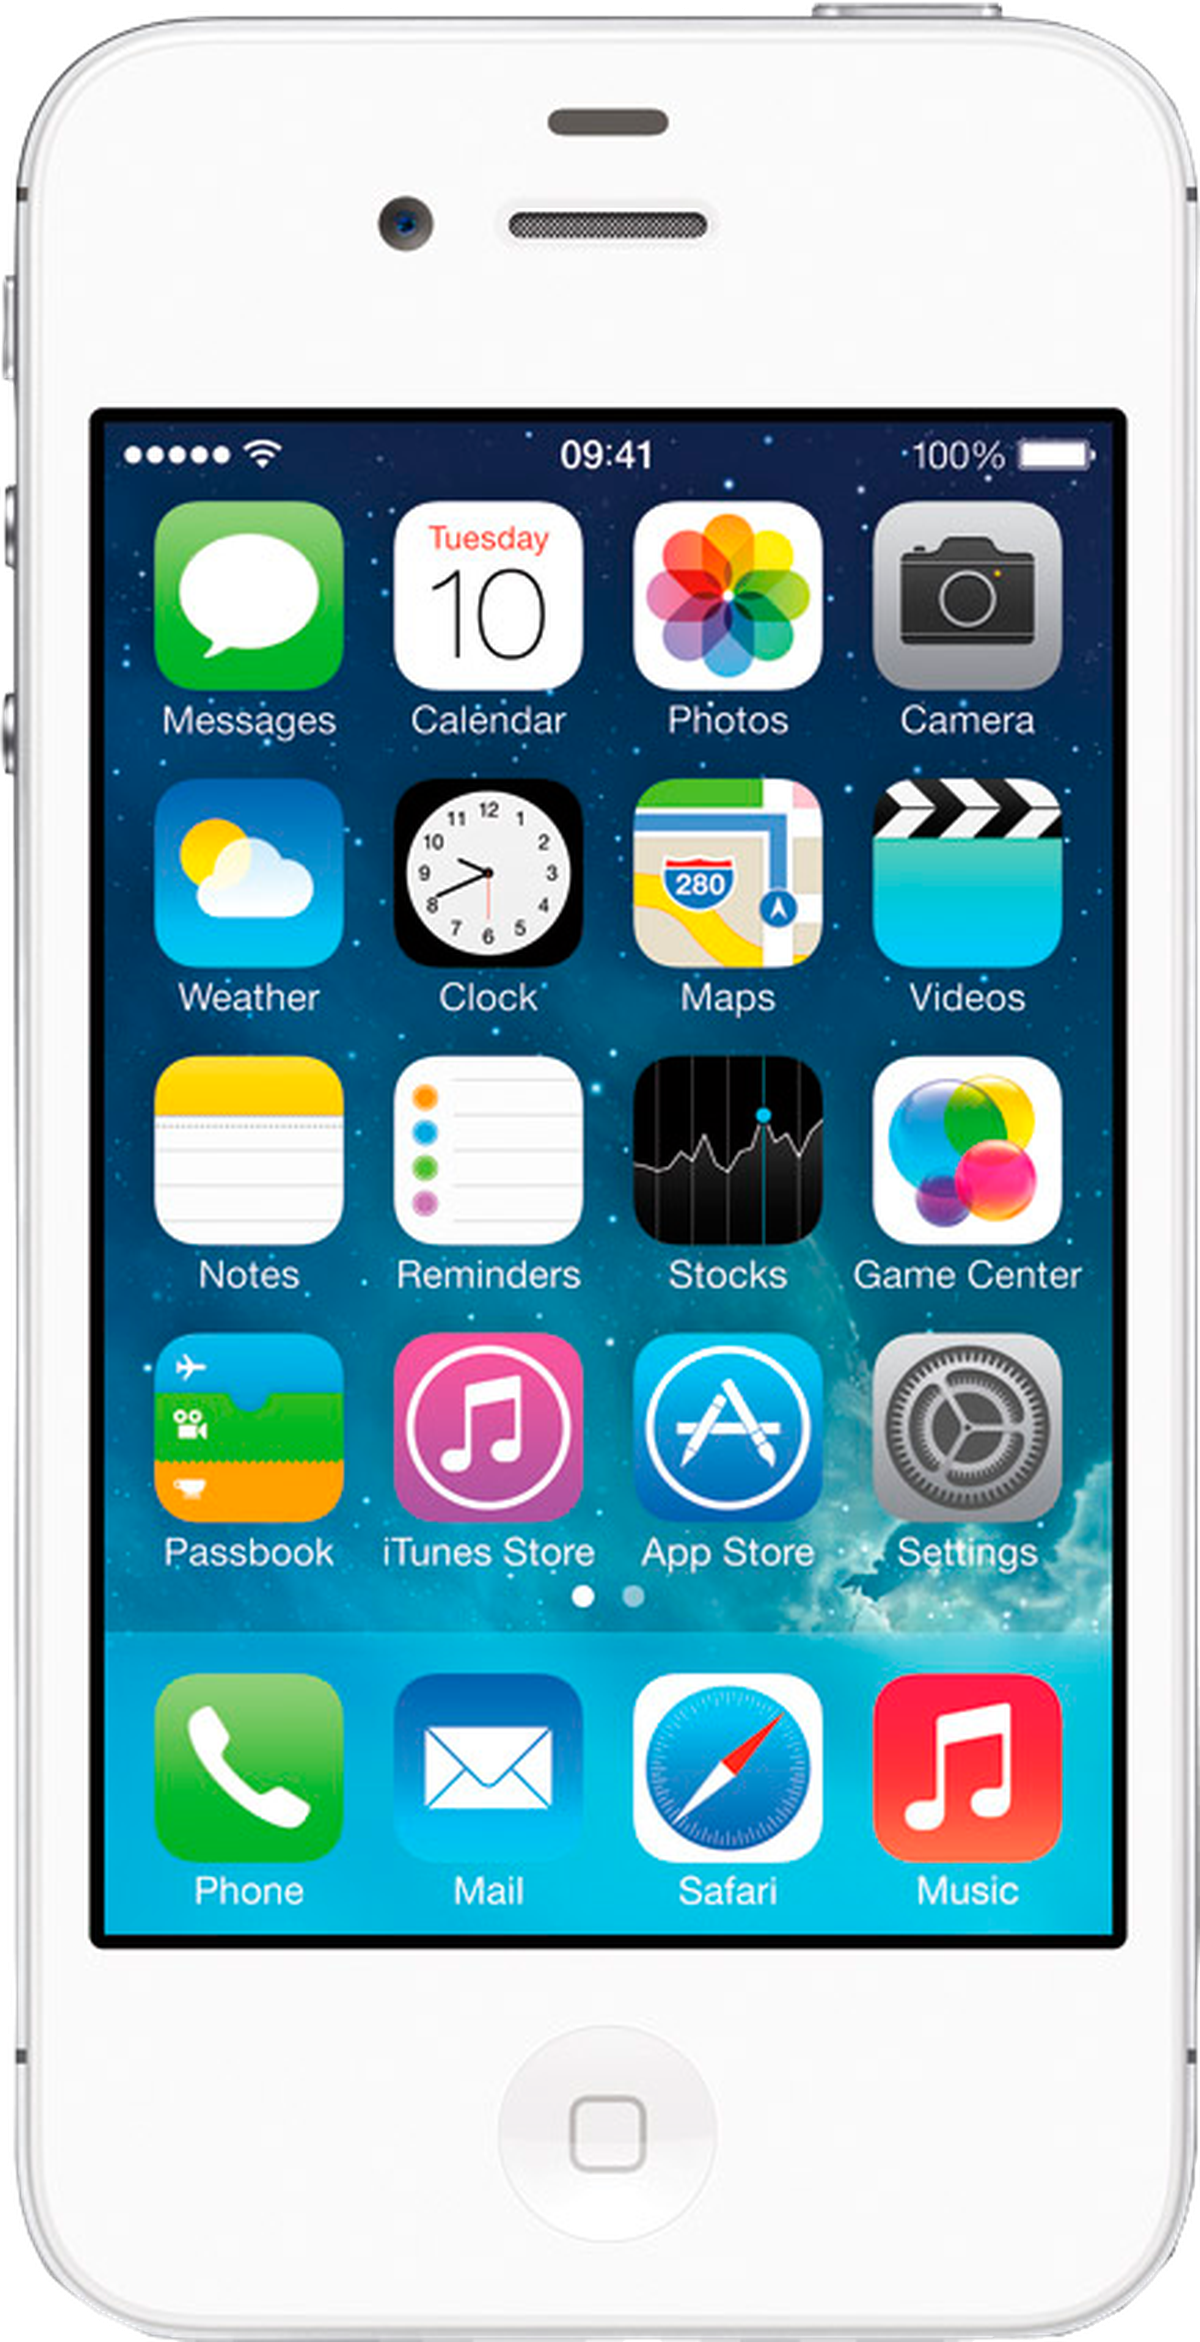 Apple iPhone 4S: características y valoraciones